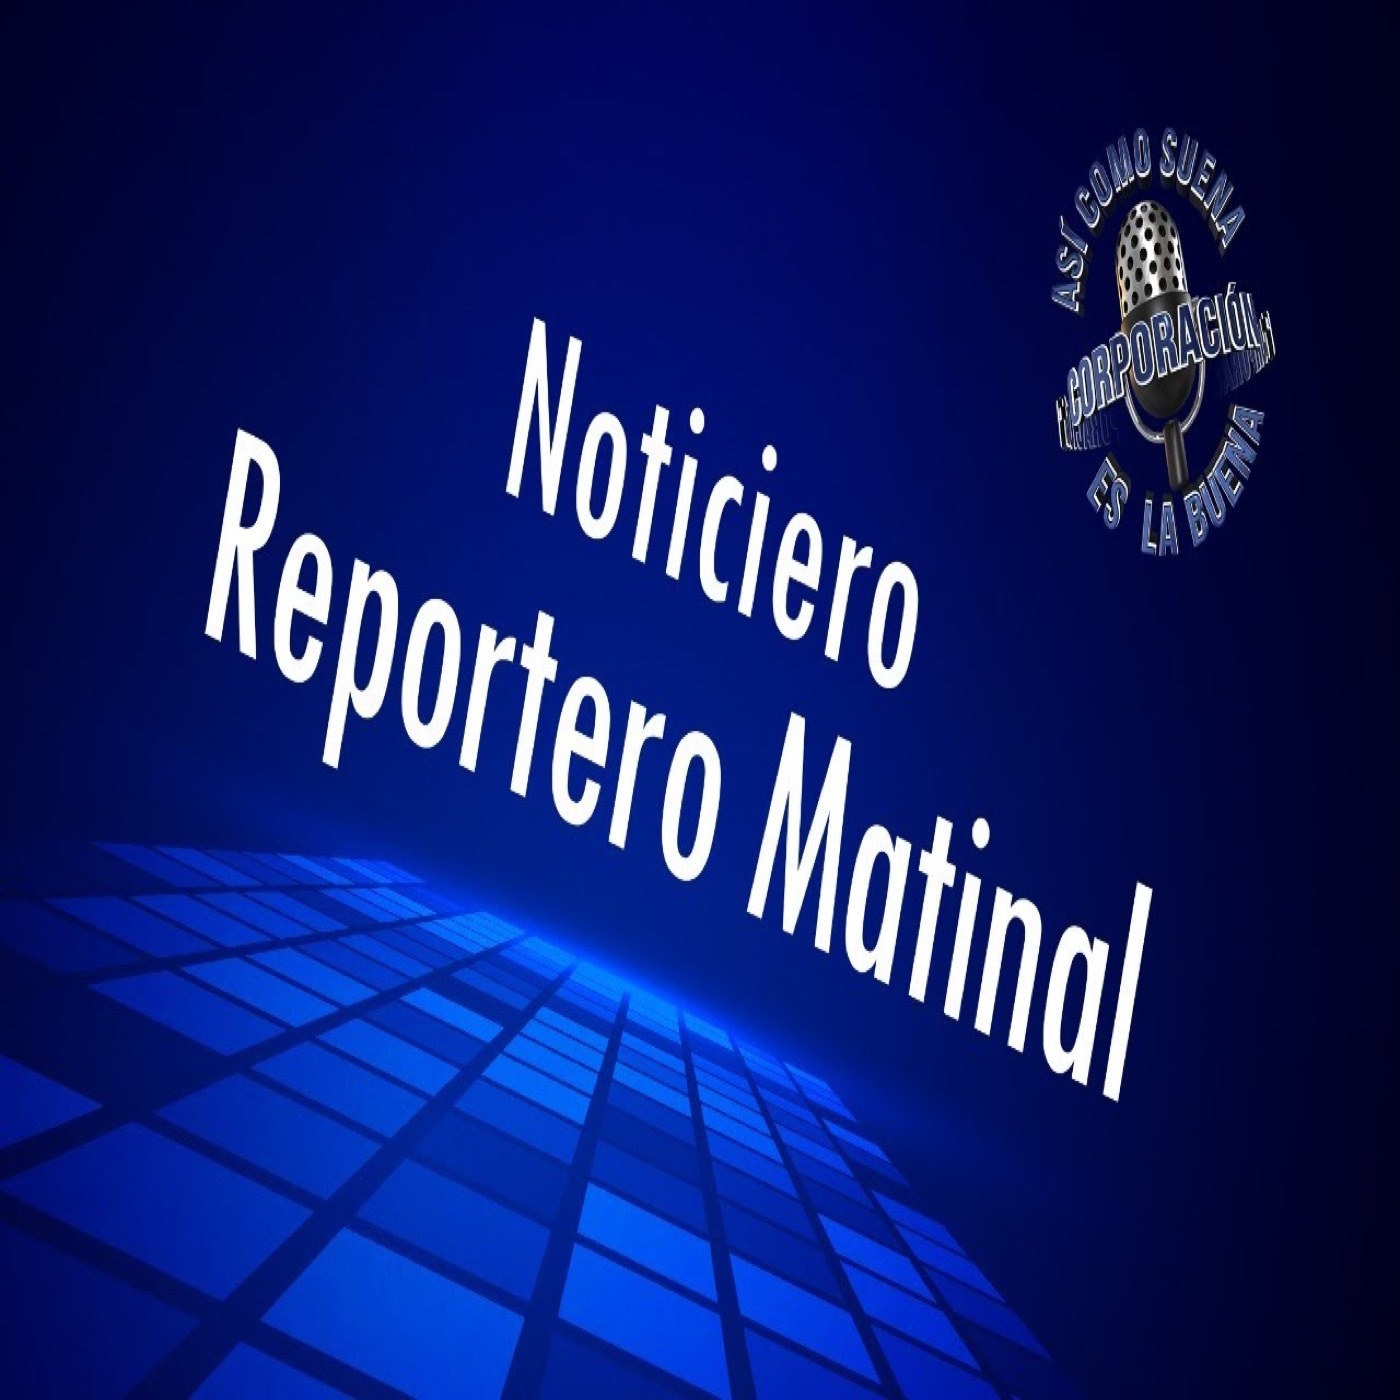 Noticiero Reportero Matinal - Thursday, December 01, 2022